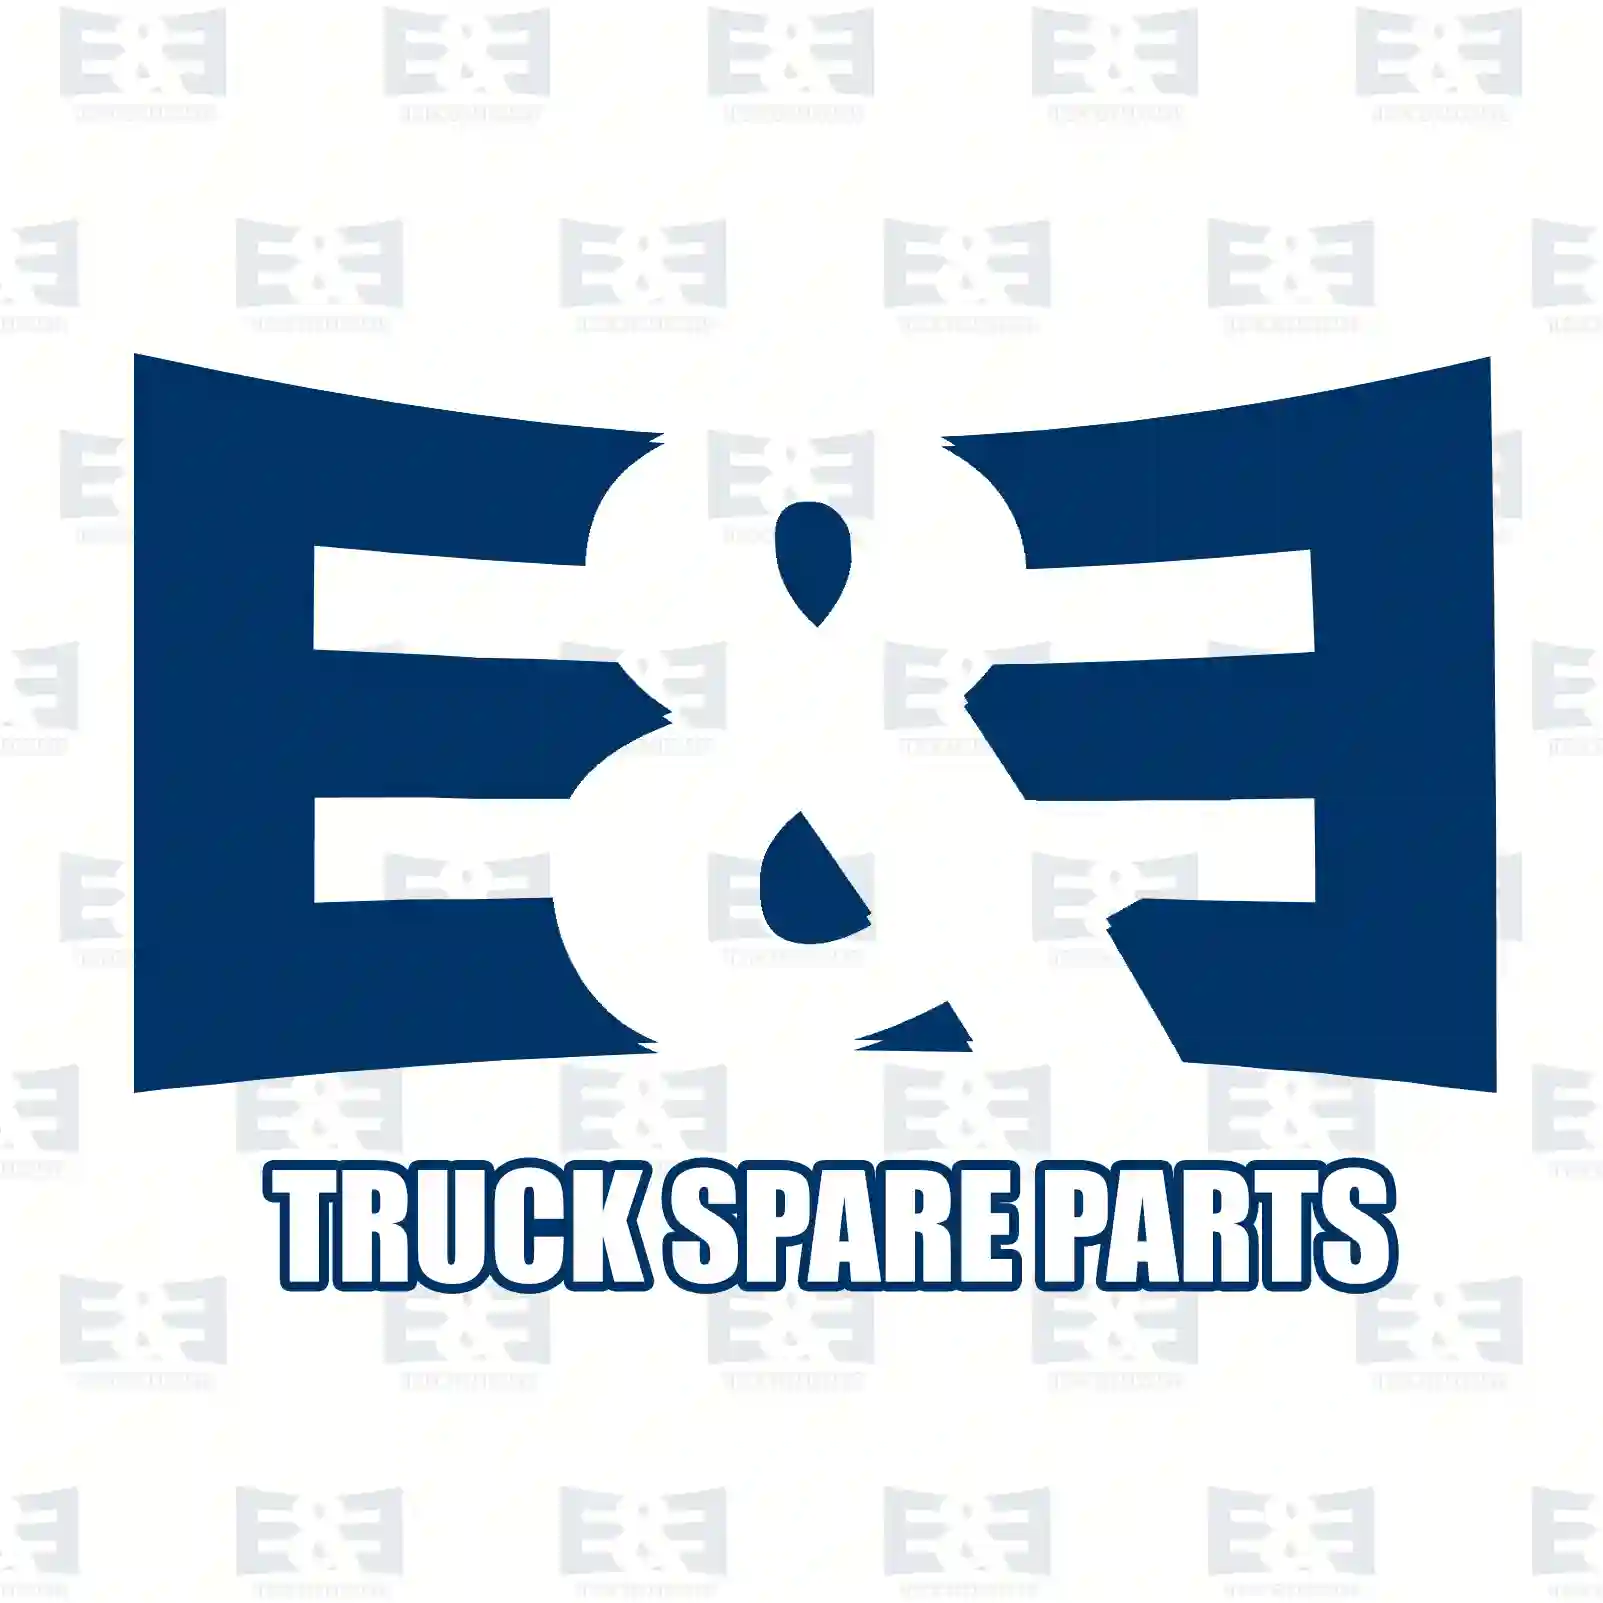 Disc brake pad kit, 2E2297462, 1144288, 1318147, 1415168, 1465168, 1C15-2K021-AD, 1C1J-2K021-AB, 1C1J-2K021-AC, 4095132, 4114749 ||  2E2297462 E&E Truck Spare Parts | Truck Spare Parts, Auotomotive Spare Parts Disc brake pad kit, 2E2297462, 1144288, 1318147, 1415168, 1465168, 1C15-2K021-AD, 1C1J-2K021-AB, 1C1J-2K021-AC, 4095132, 4114749 ||  2E2297462 E&E Truck Spare Parts | Truck Spare Parts, Auotomotive Spare Parts